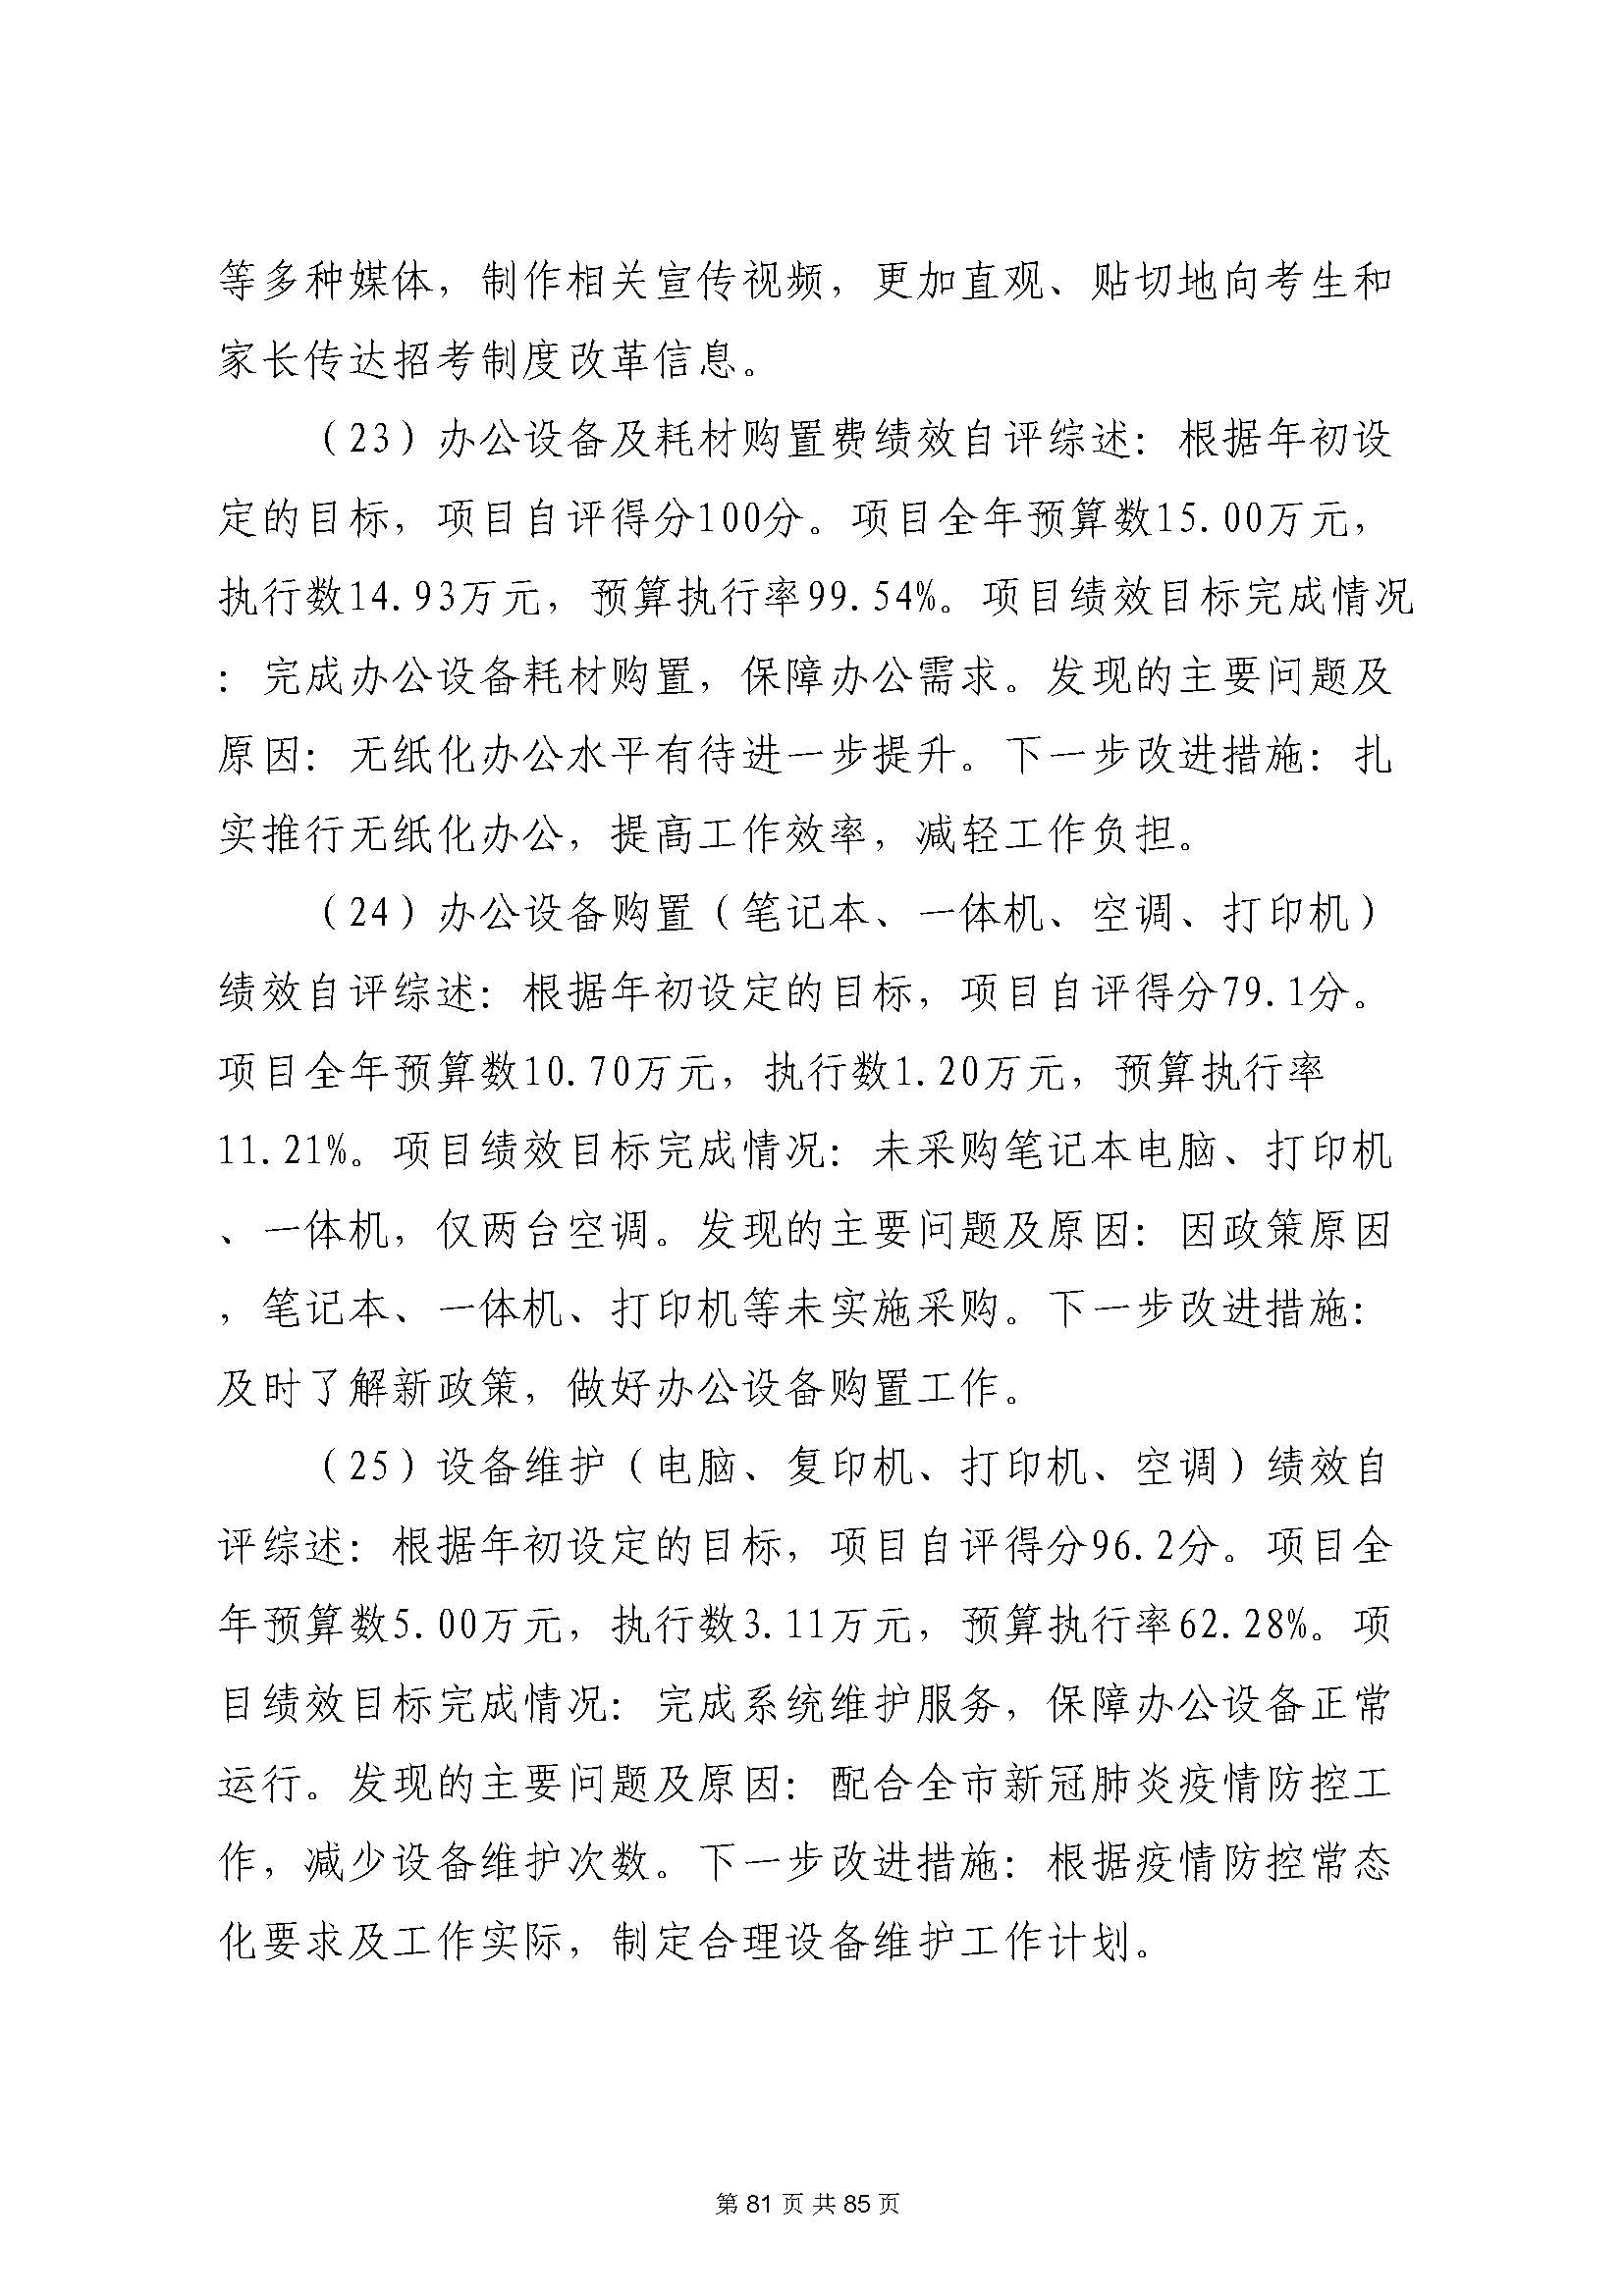 深圳市招生考试办公室2020年度部门决算_页面_82.jpg